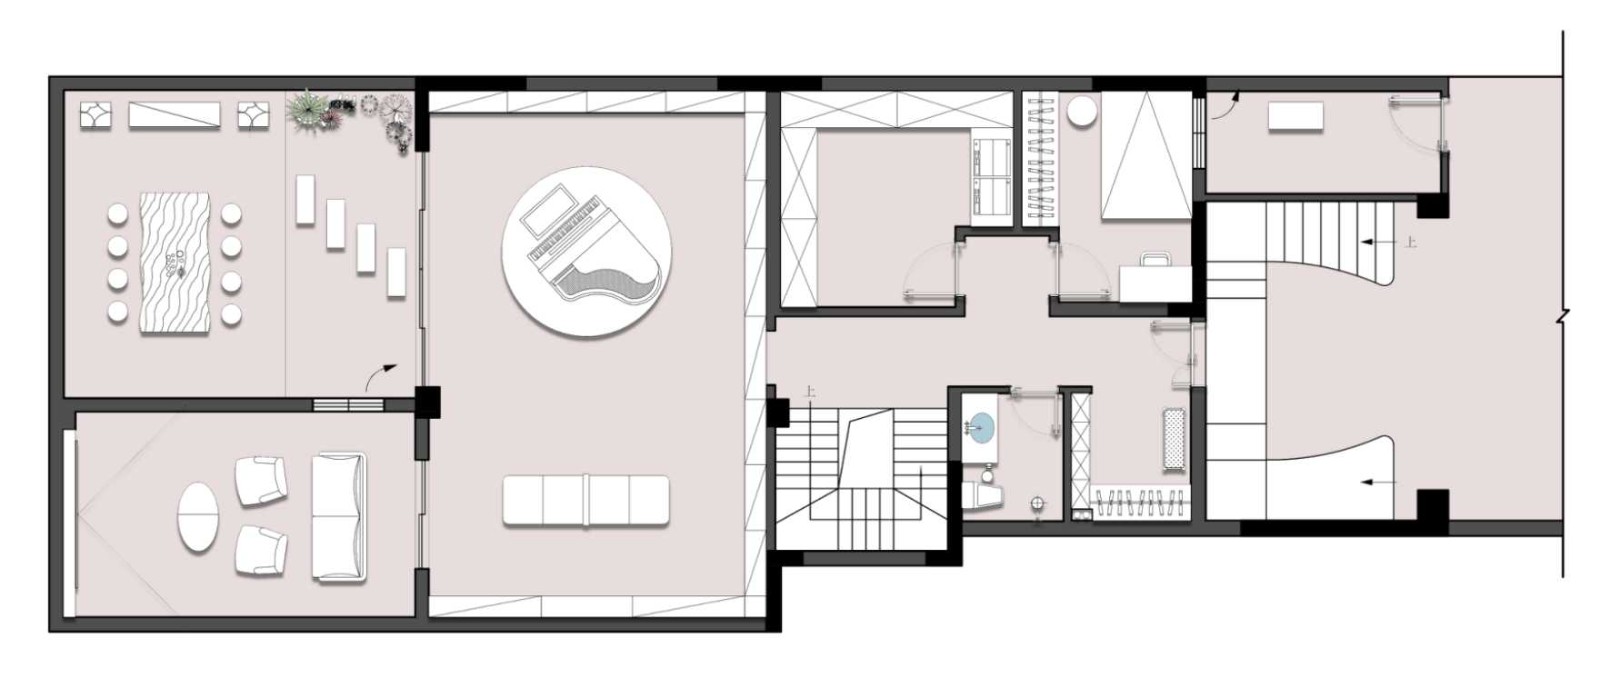 360现代别墅装修效果图,香林堤装修案例效果图-美广网(图1)